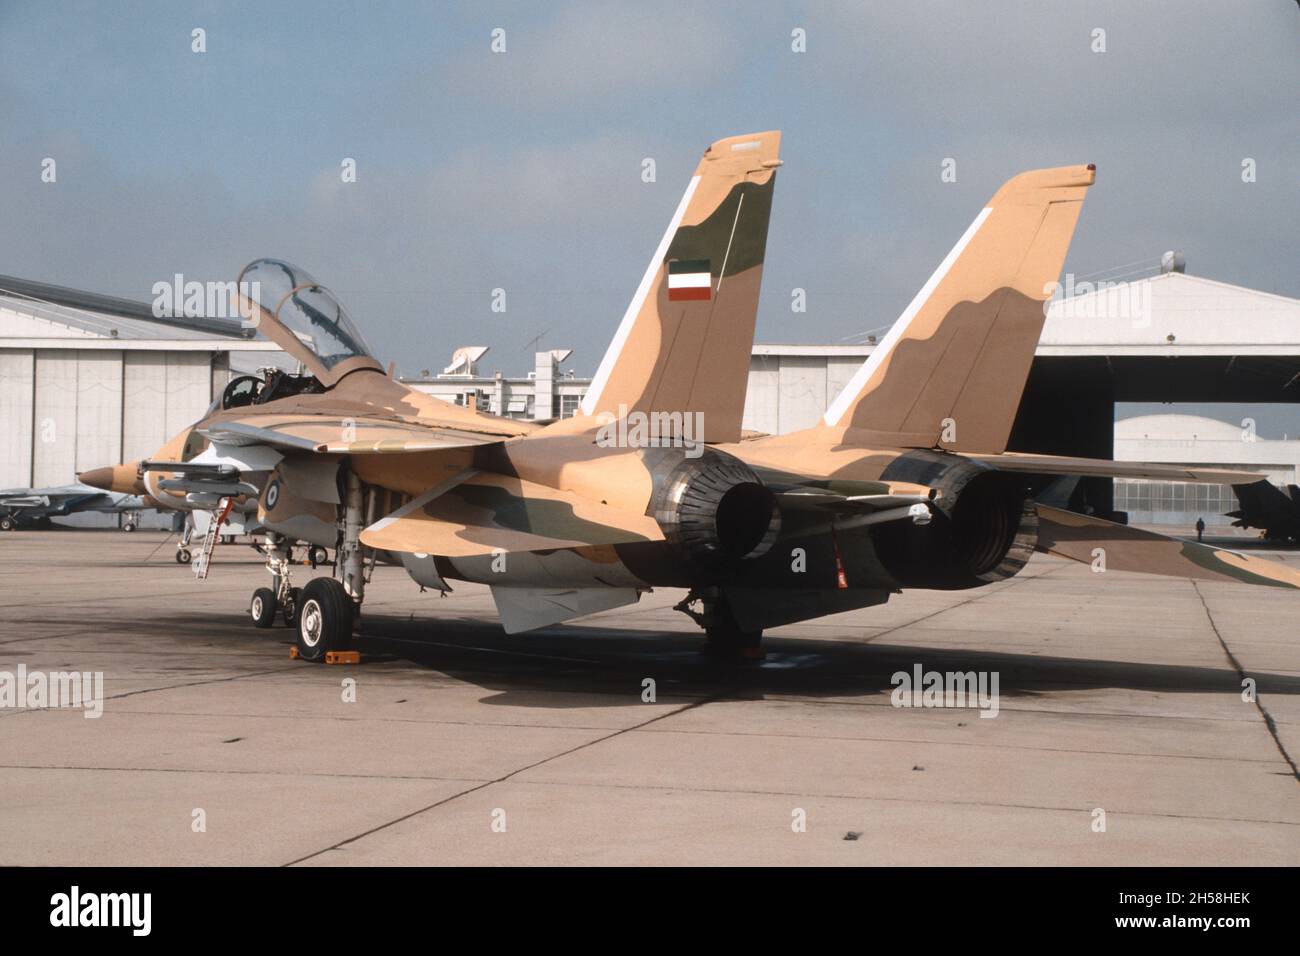 F-14 mit iranischen Markierungen auf der statischen Linie der Top Gun bei NAS Miramar, San Diego, Kalifornien. Dies war die F-14 von 80th, die in den Iran geschickt werden sollte. Stockfoto